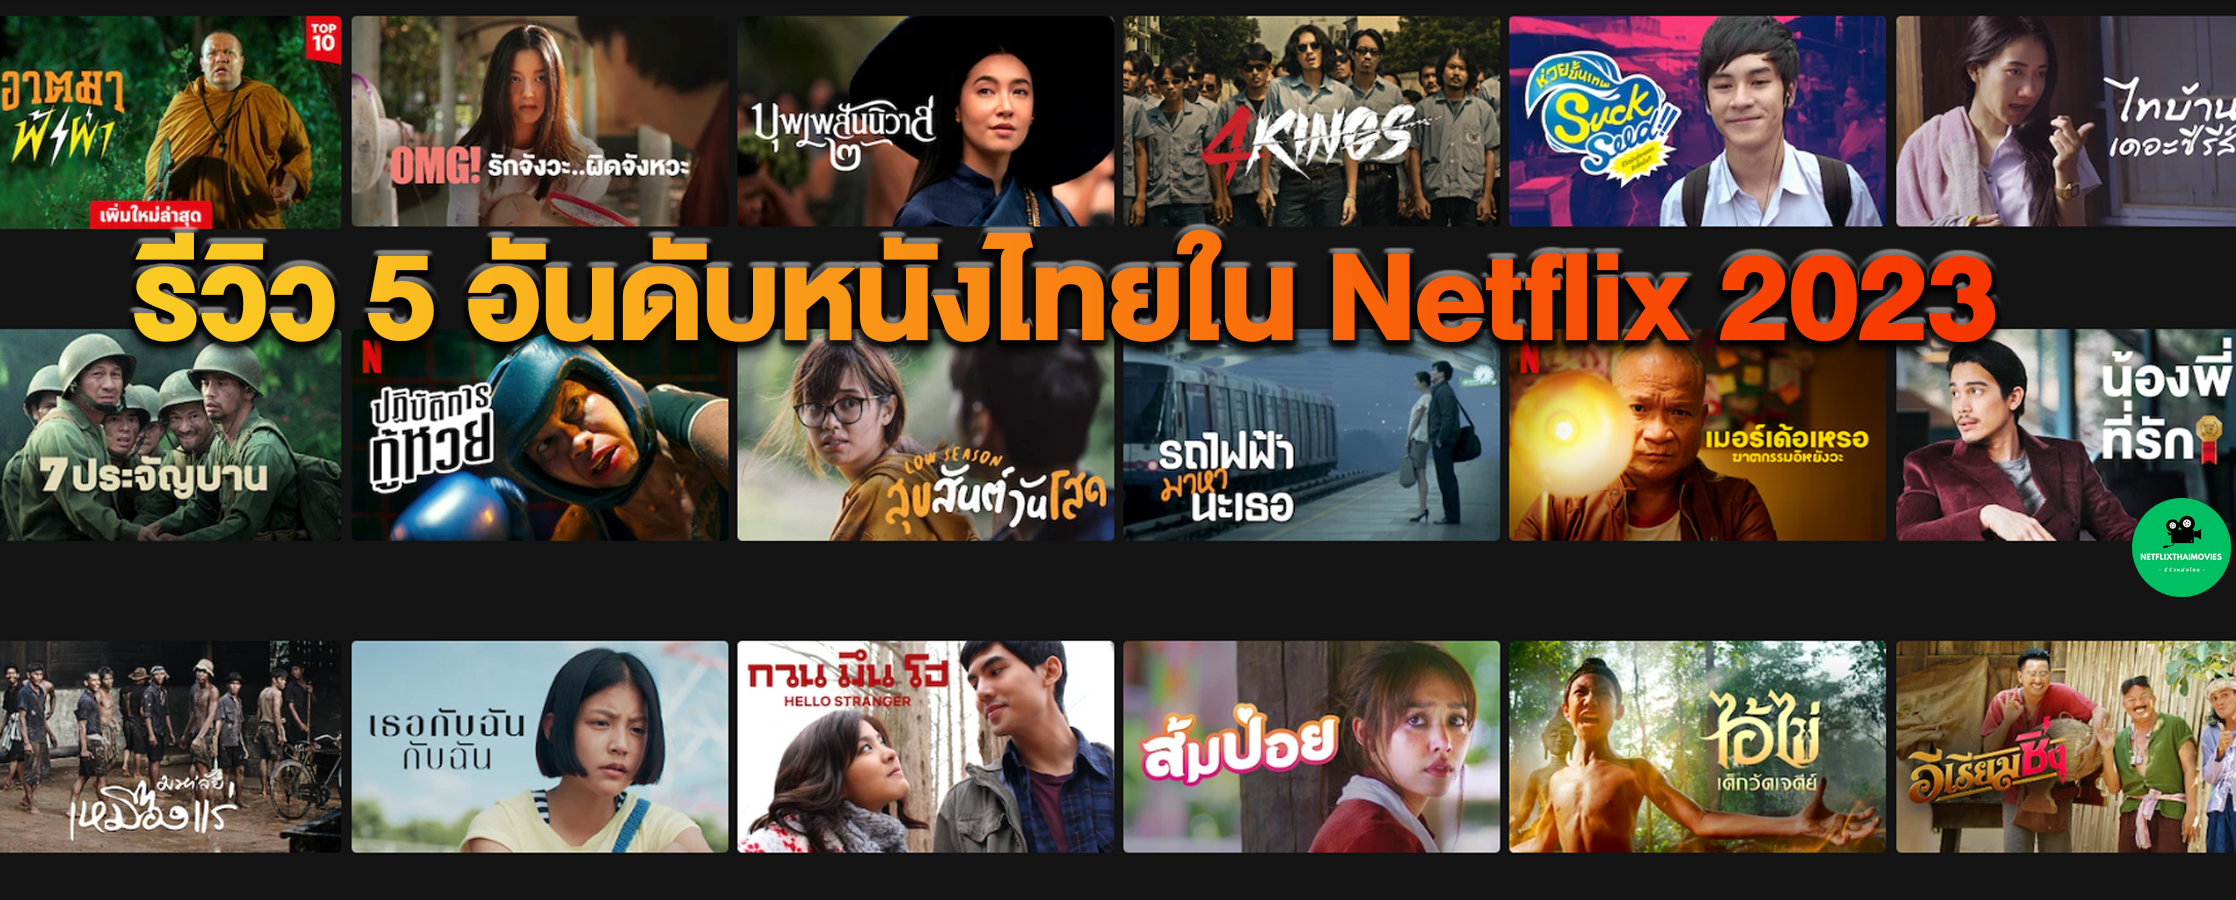 หนังไทยในnetflix